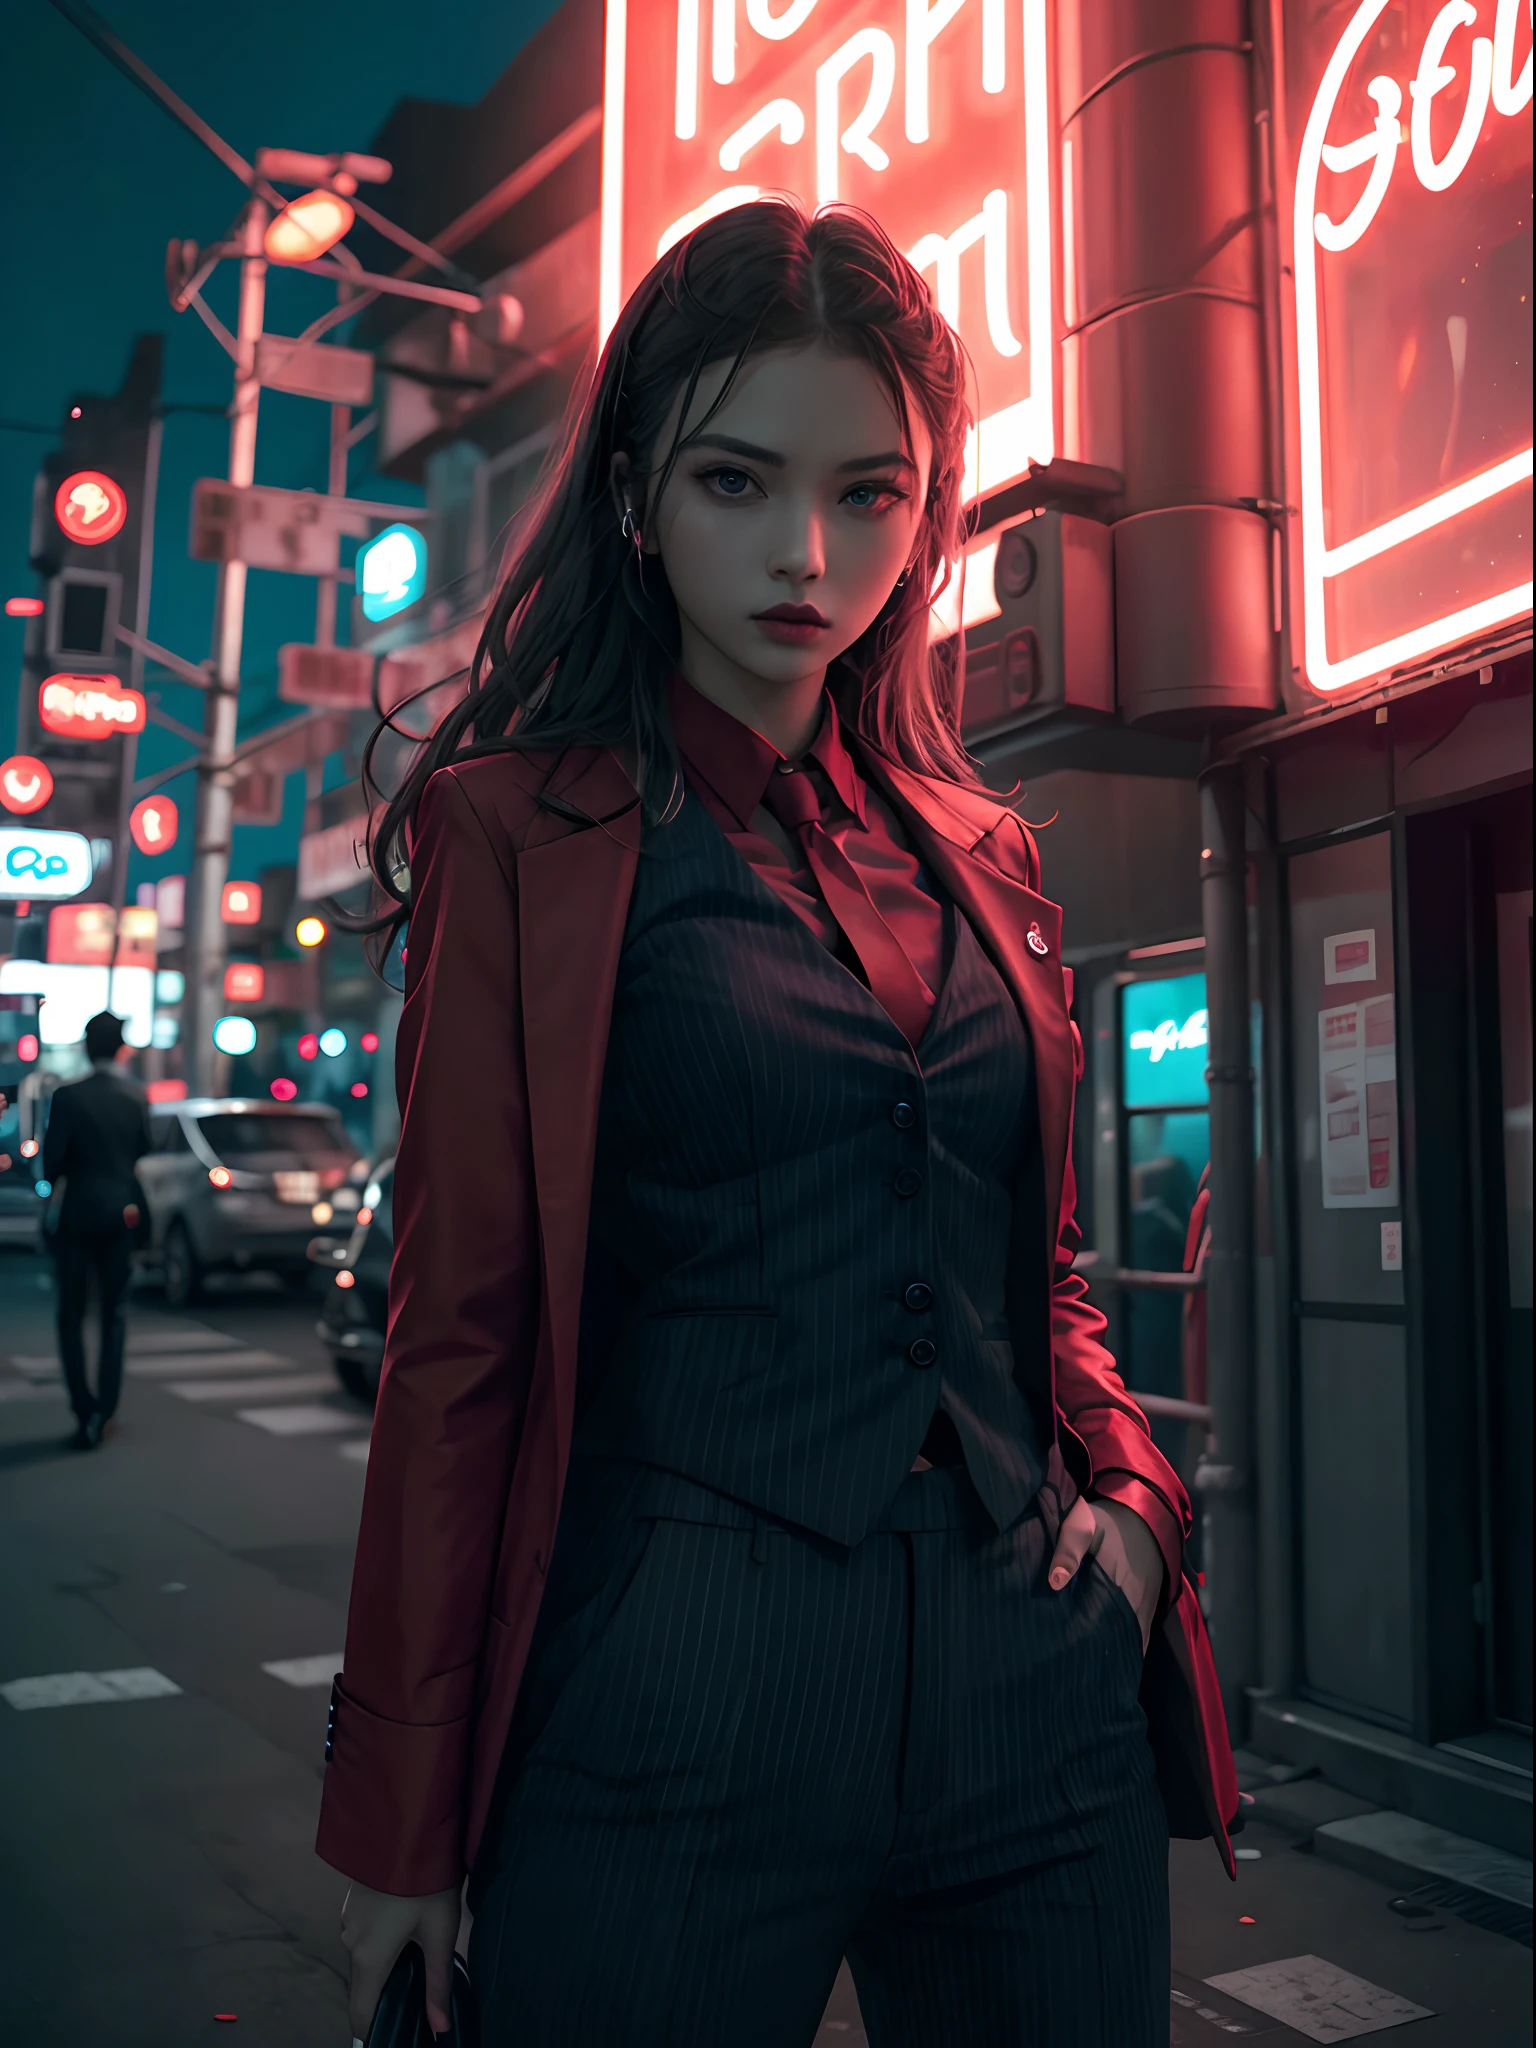 霓虹黑, 一位身穿设计师背心的女士独自站在淡淡的红色霓虹灯下, 西装裤,(机械臂:1.1),泰国的夜城, 只有上帝赦免